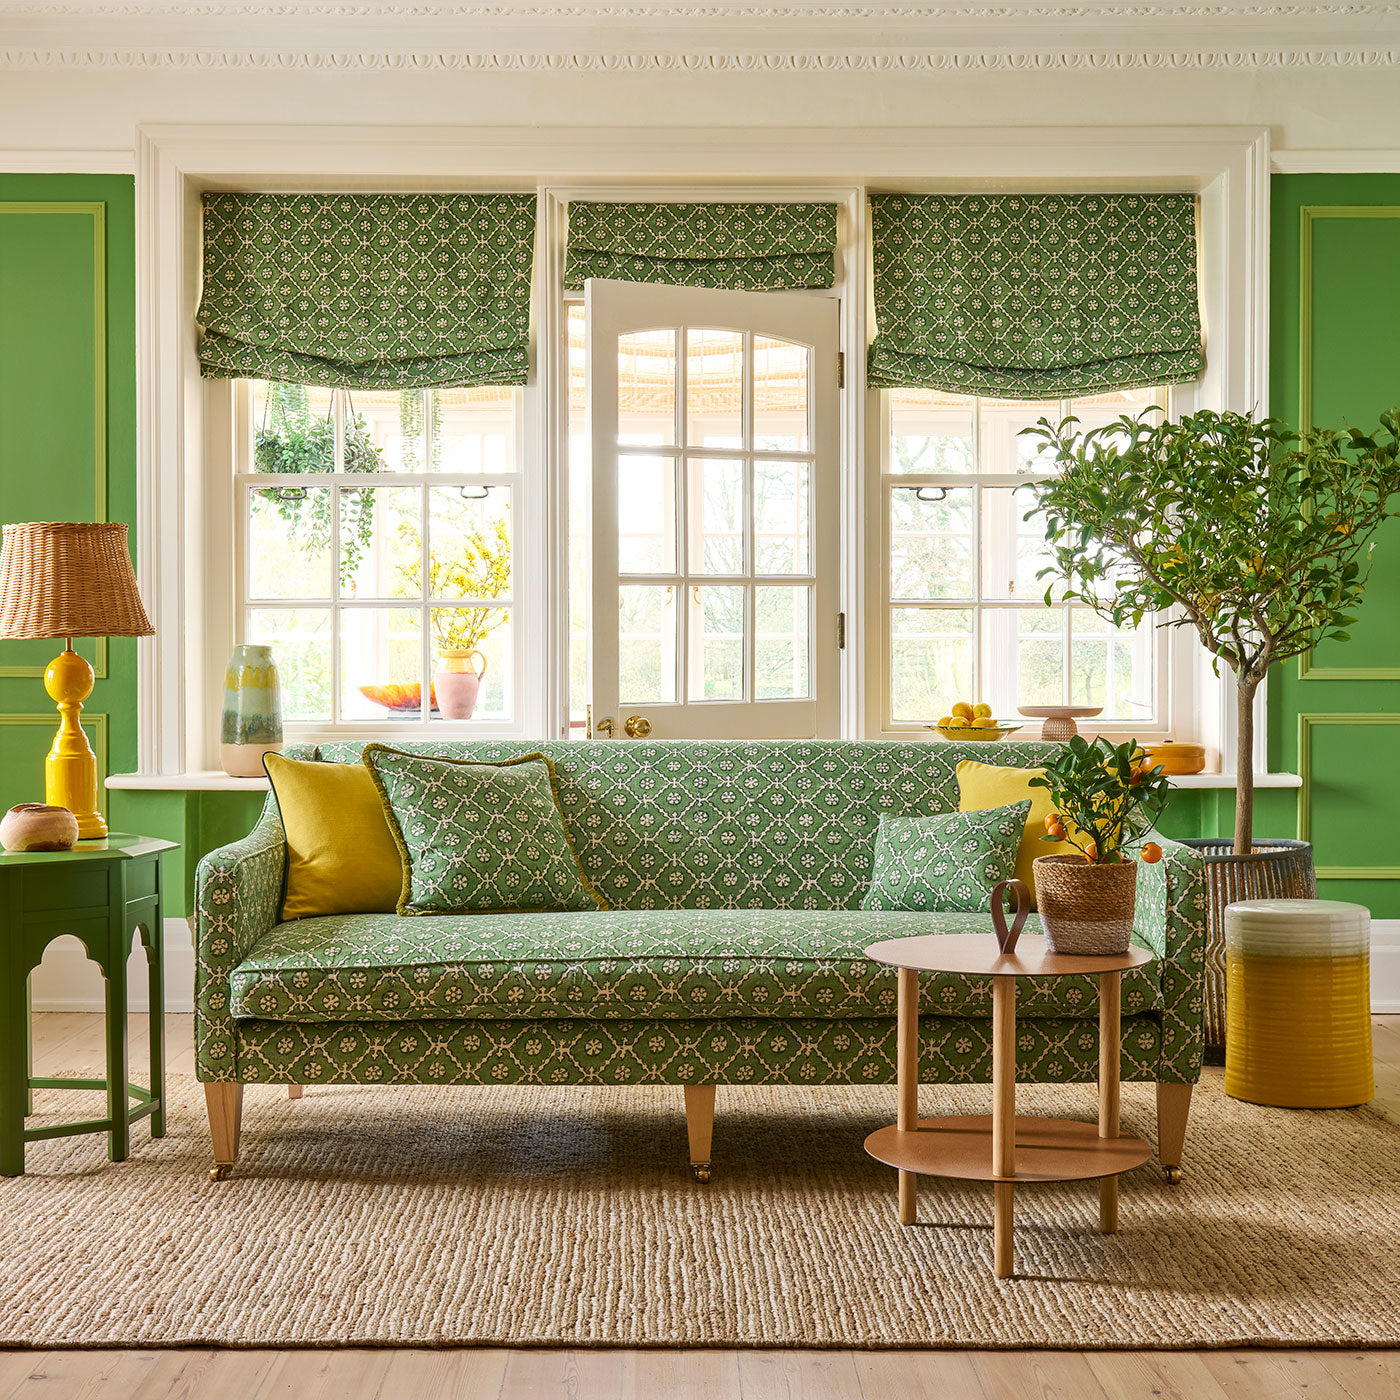 Irish Home Decor: Embrace the Charm of Irish-inspired Interiors